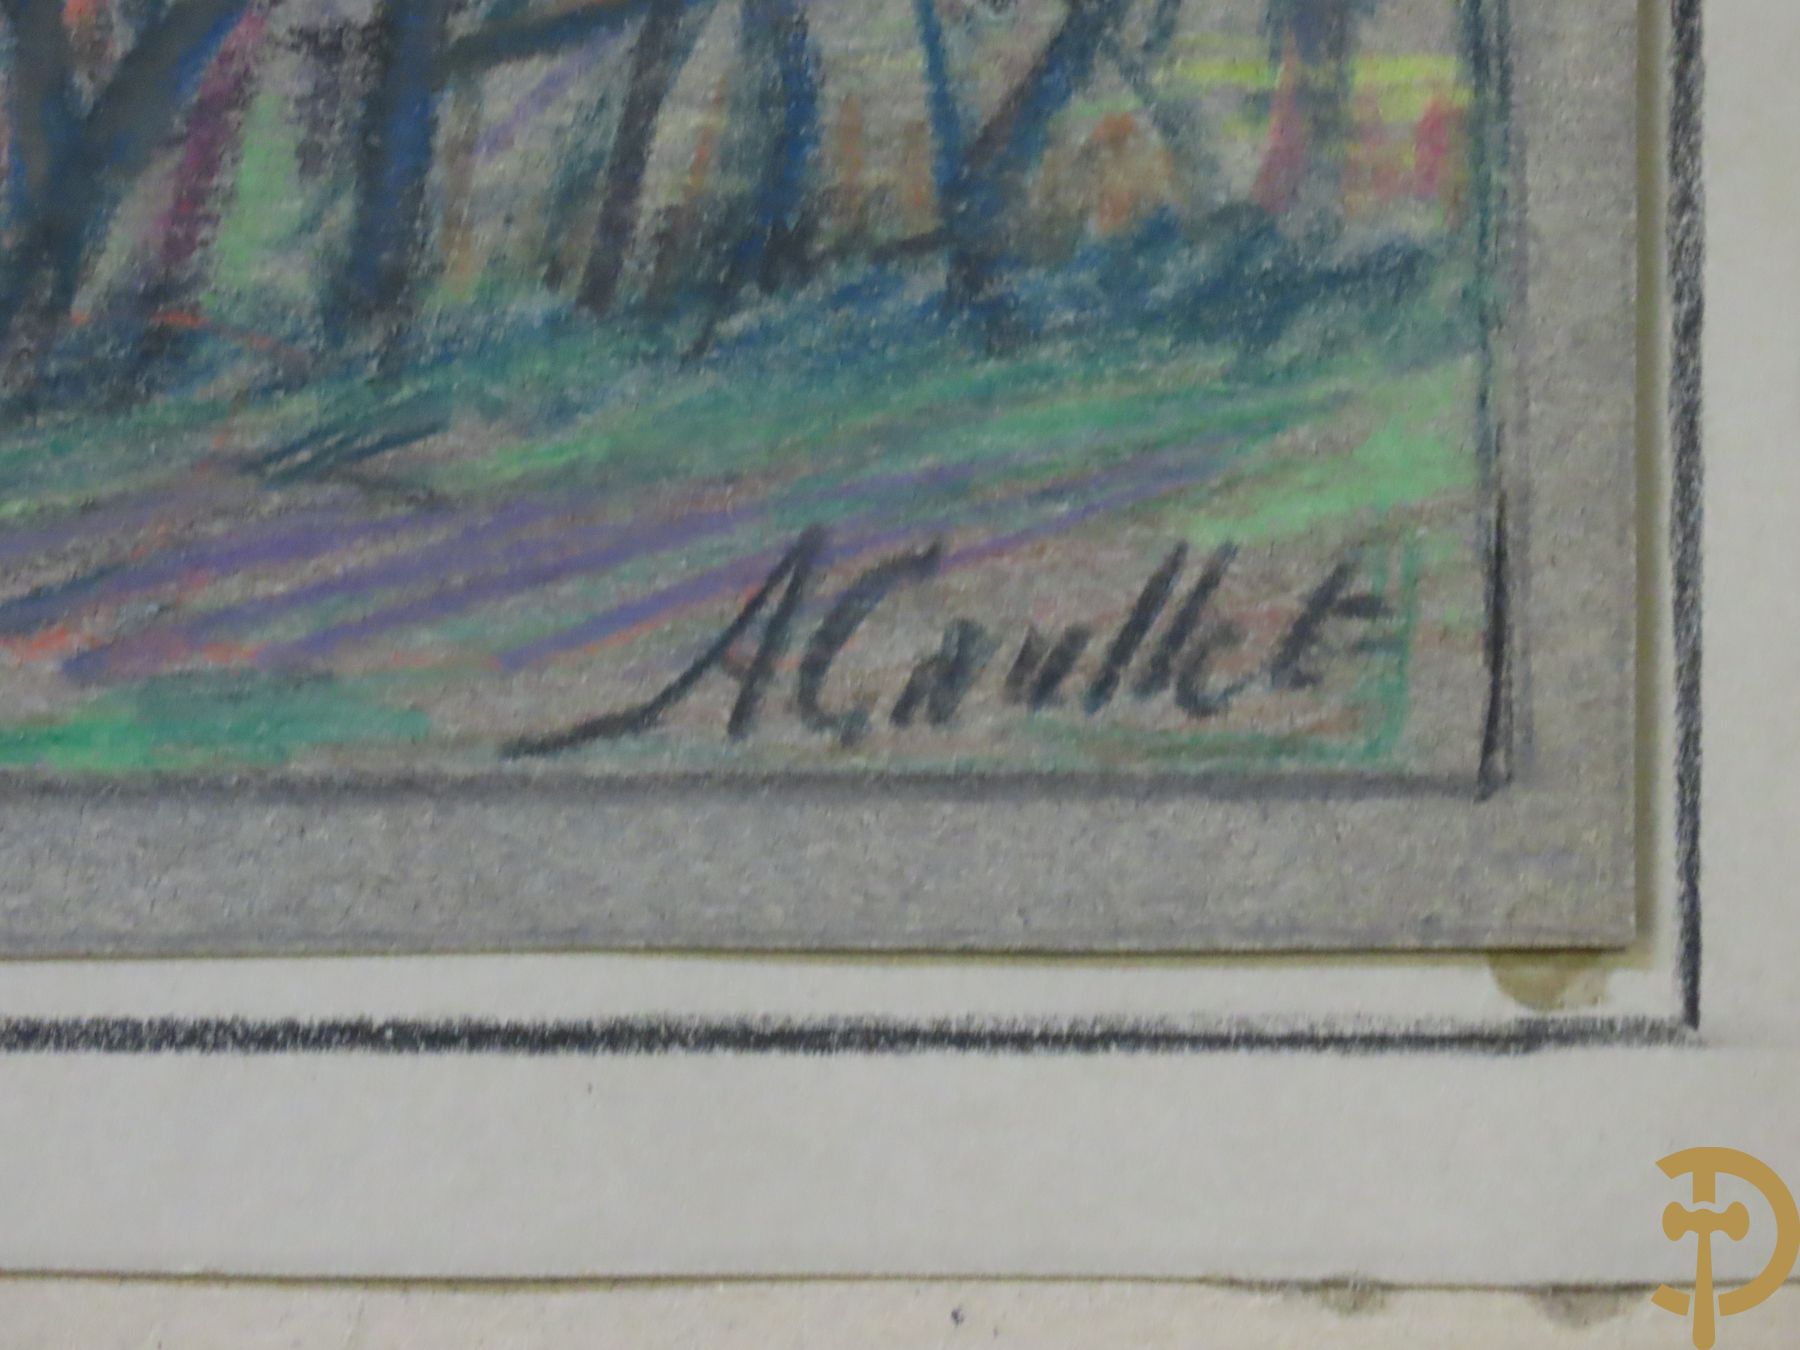 CAULLET A. get. Collectie schilderijtjes, aquarels, tekeningen en schetsen w.o. Leiezicht, landschap, zicht op Diksmuide, zicht op de Heulebeek, zittende man, hoevezichten